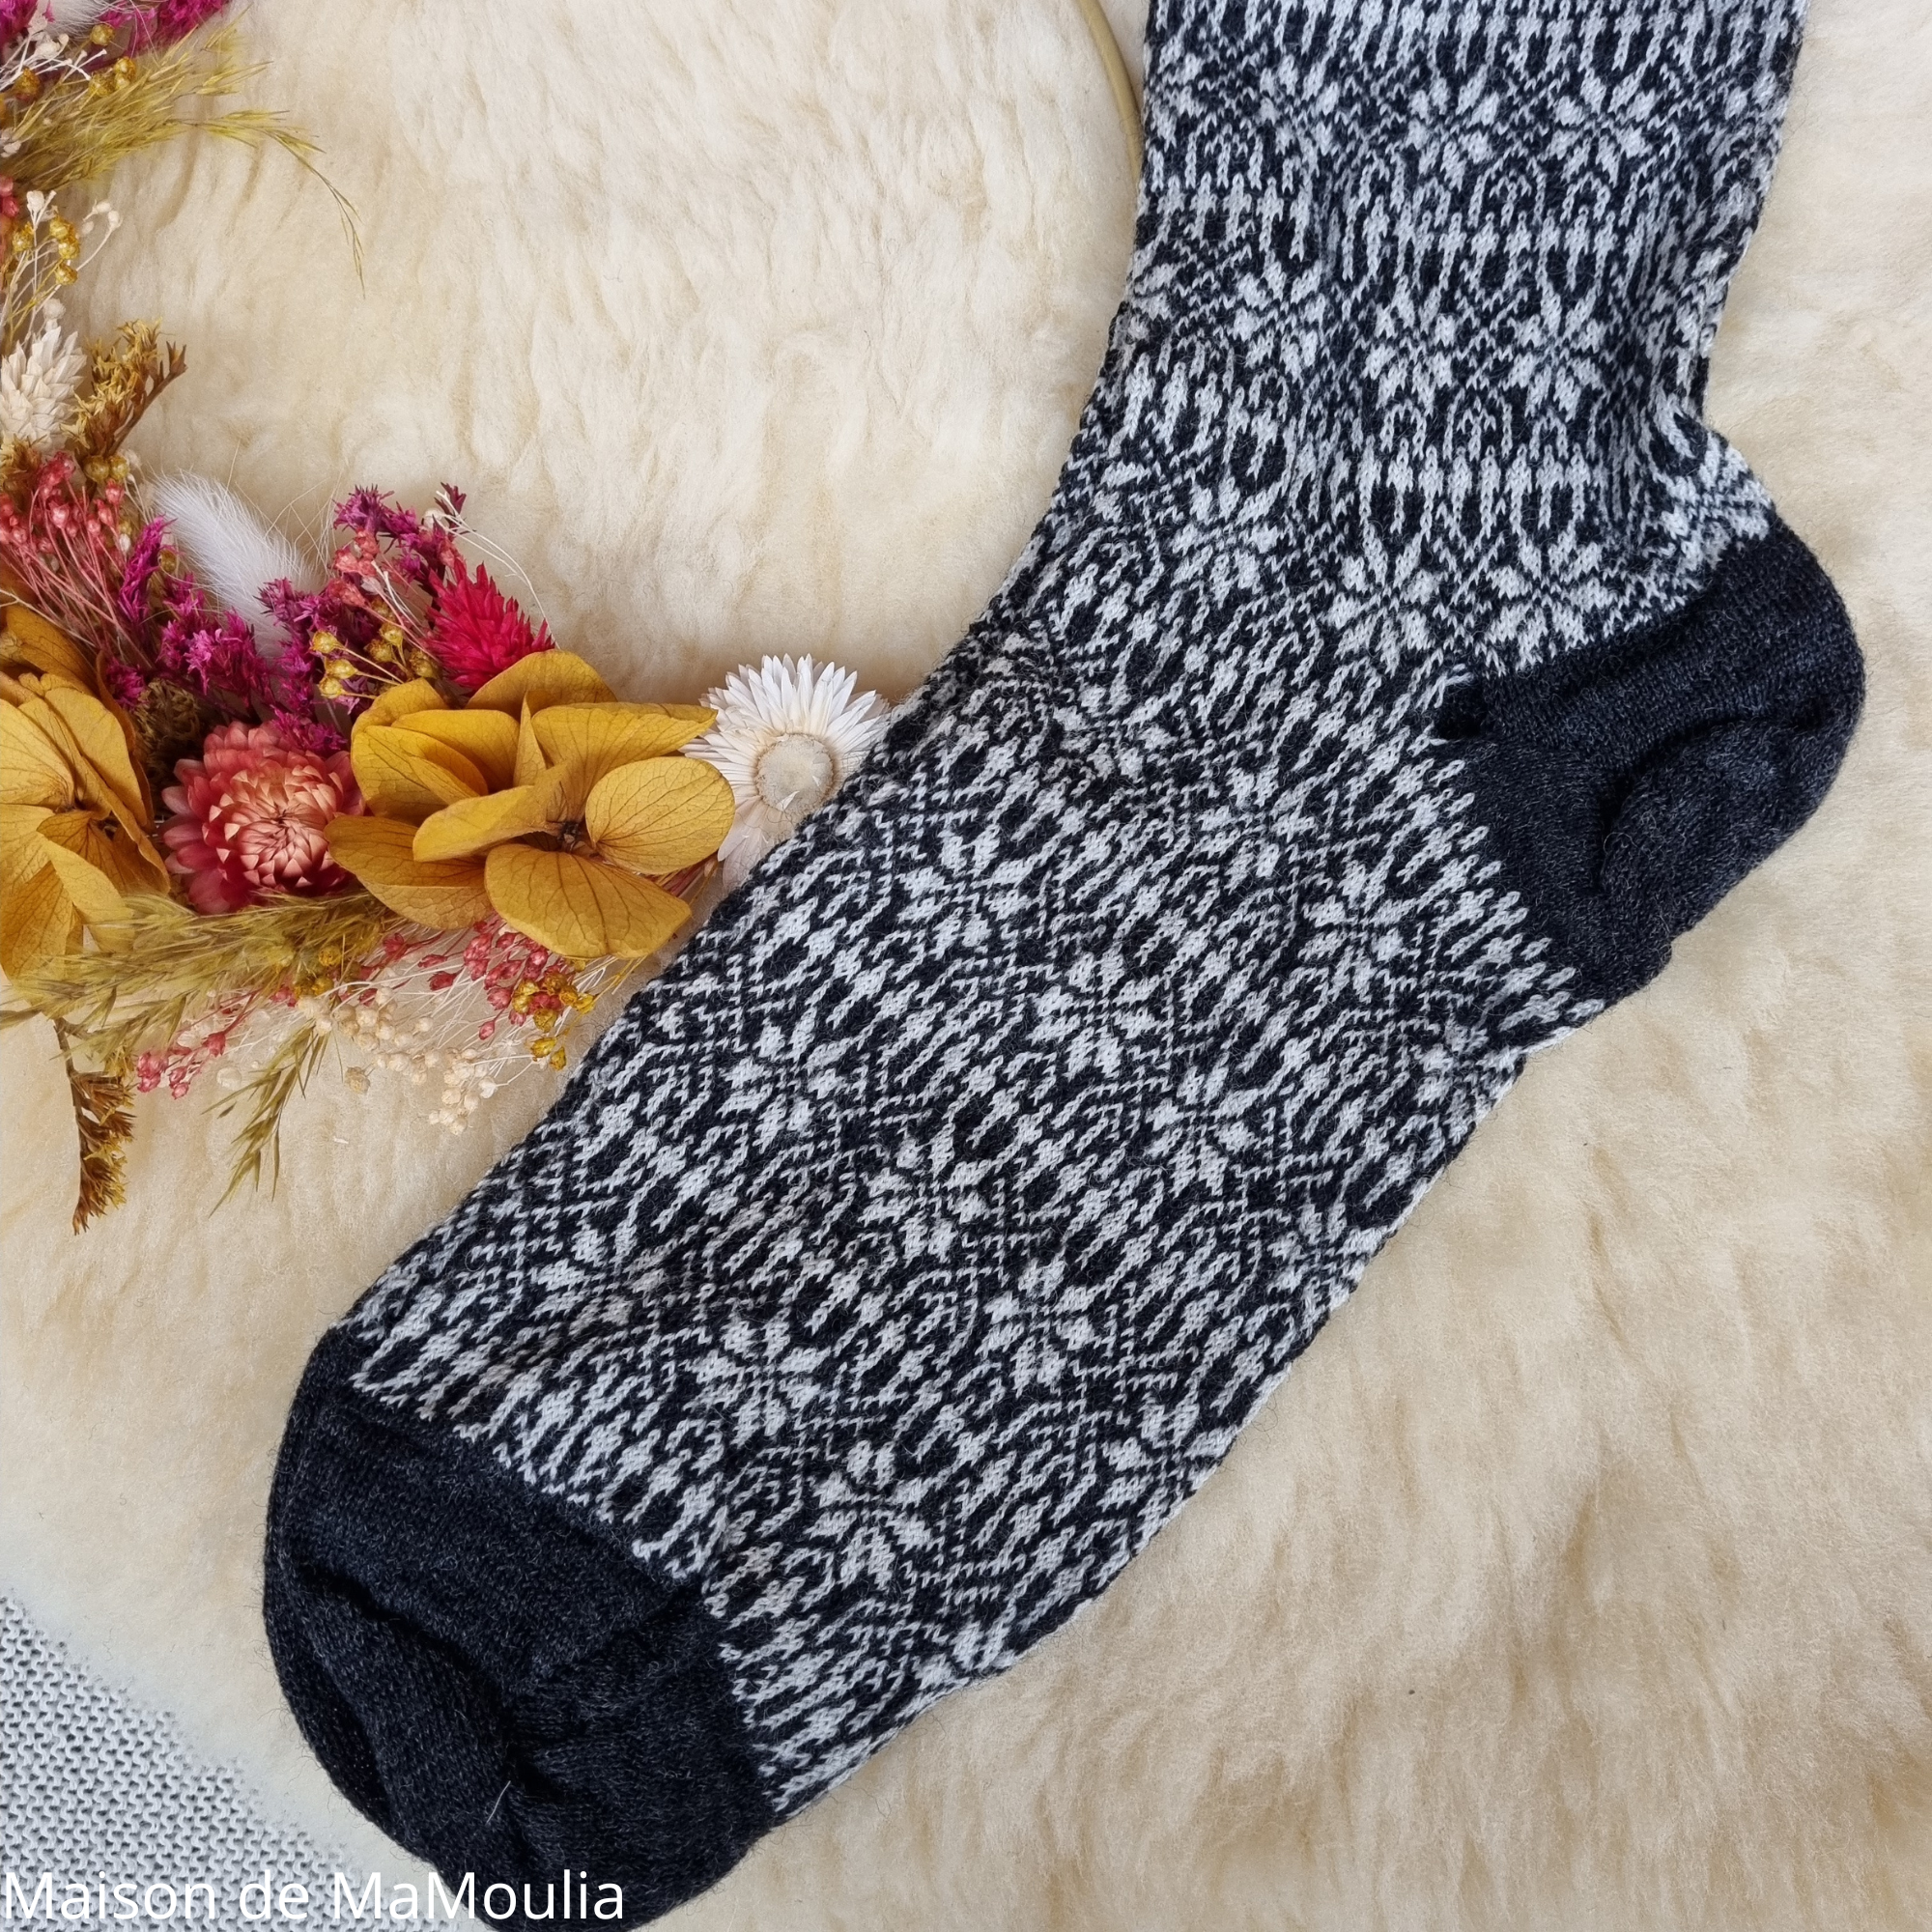 156-chaussettes-pure-laine-bio-ecologique-hirsch-natur-maison-de-mamoulia-norvegienne-adulte- noir-ecru-fine